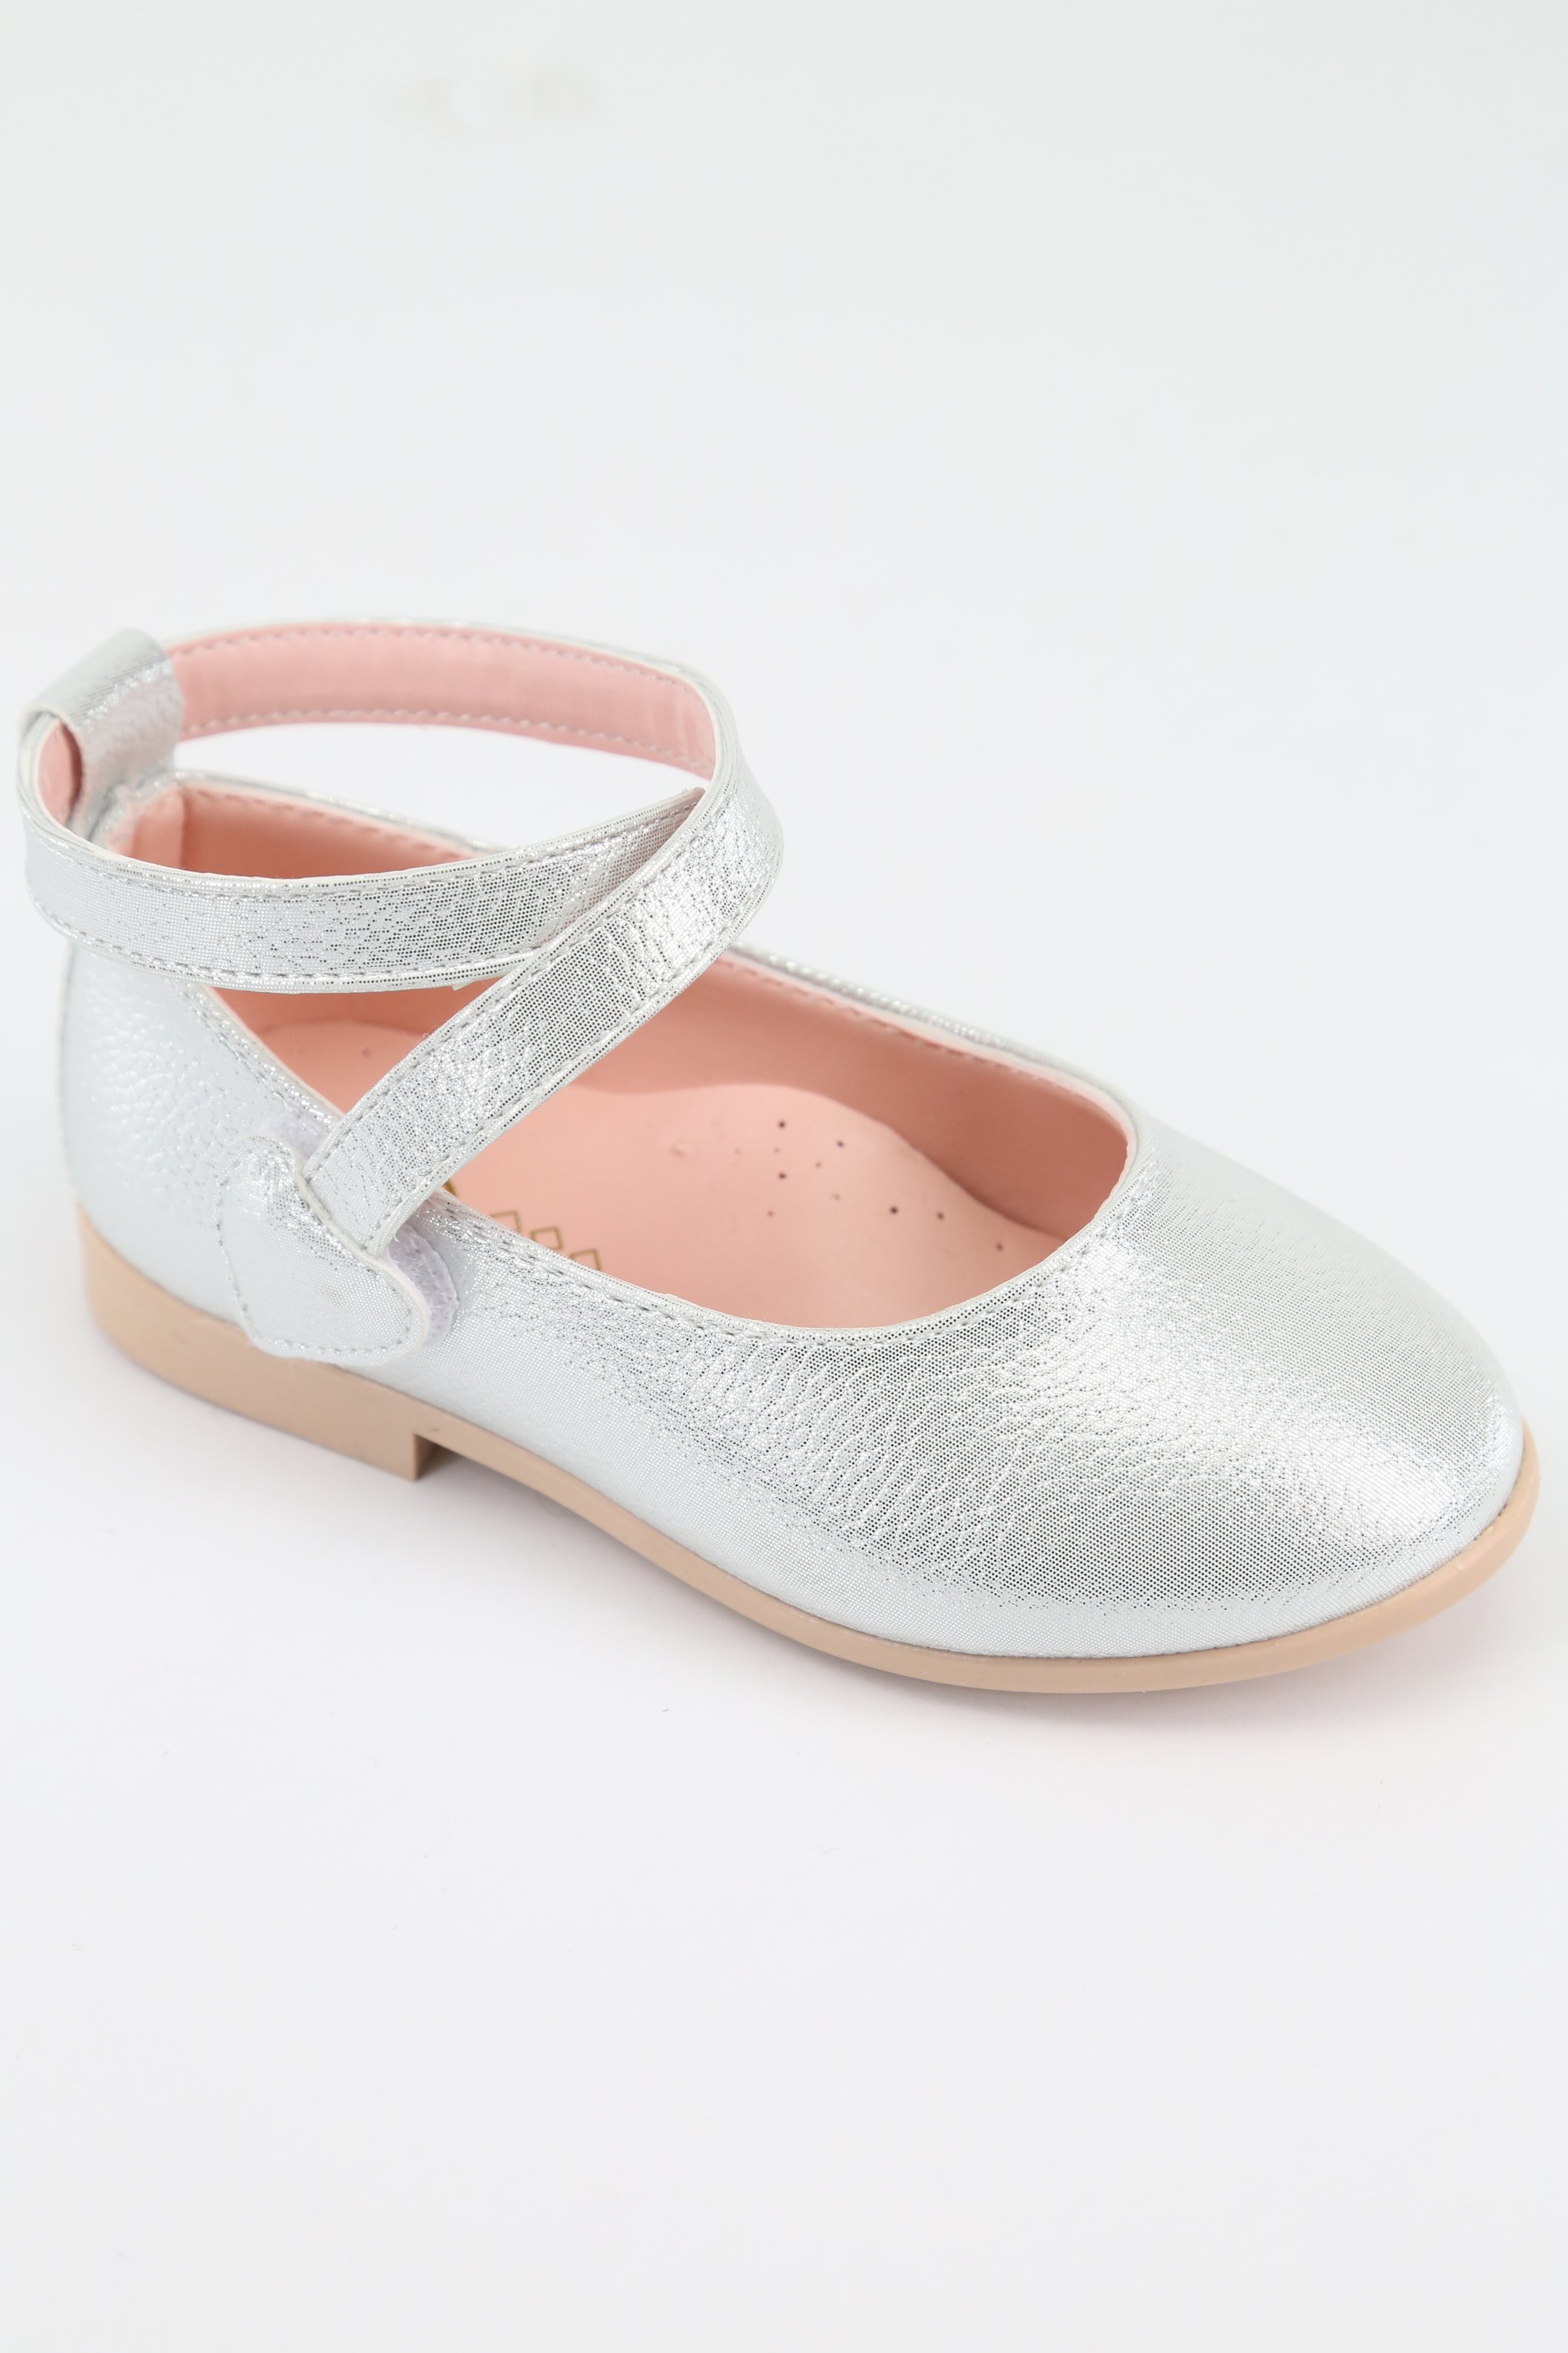 Parıltılı Gümüş ve Pembe Kız Çocuk Abiye Babet Ayakkabıları  (21 -35) - Gümüş